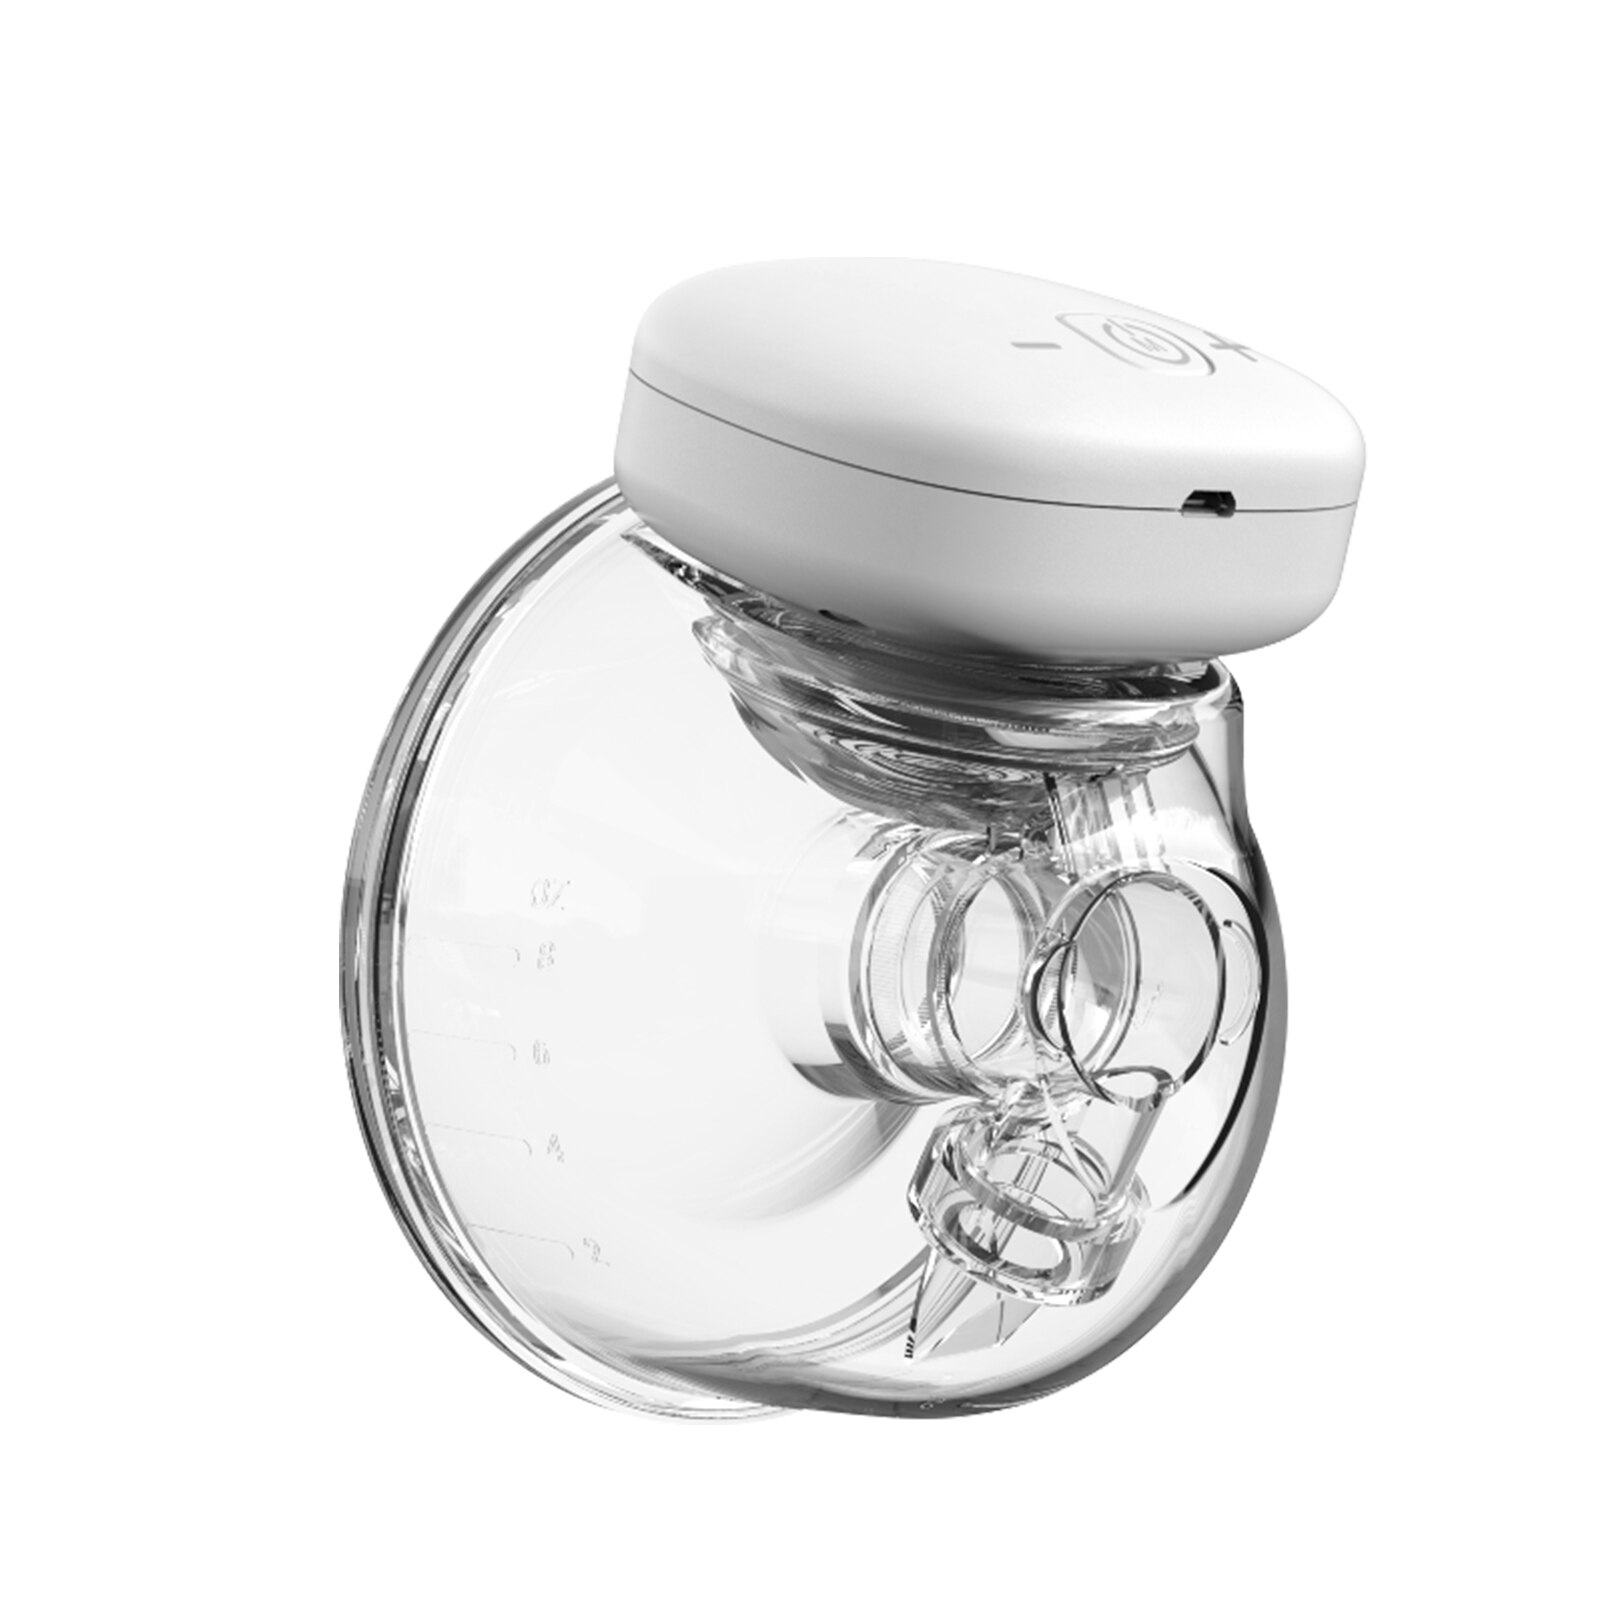 Tiralatte elettrico YOUHA ricaricabile silenzioso indossabile estrattore di latte portatile a mani libere lattiera automatica allattamento al seno